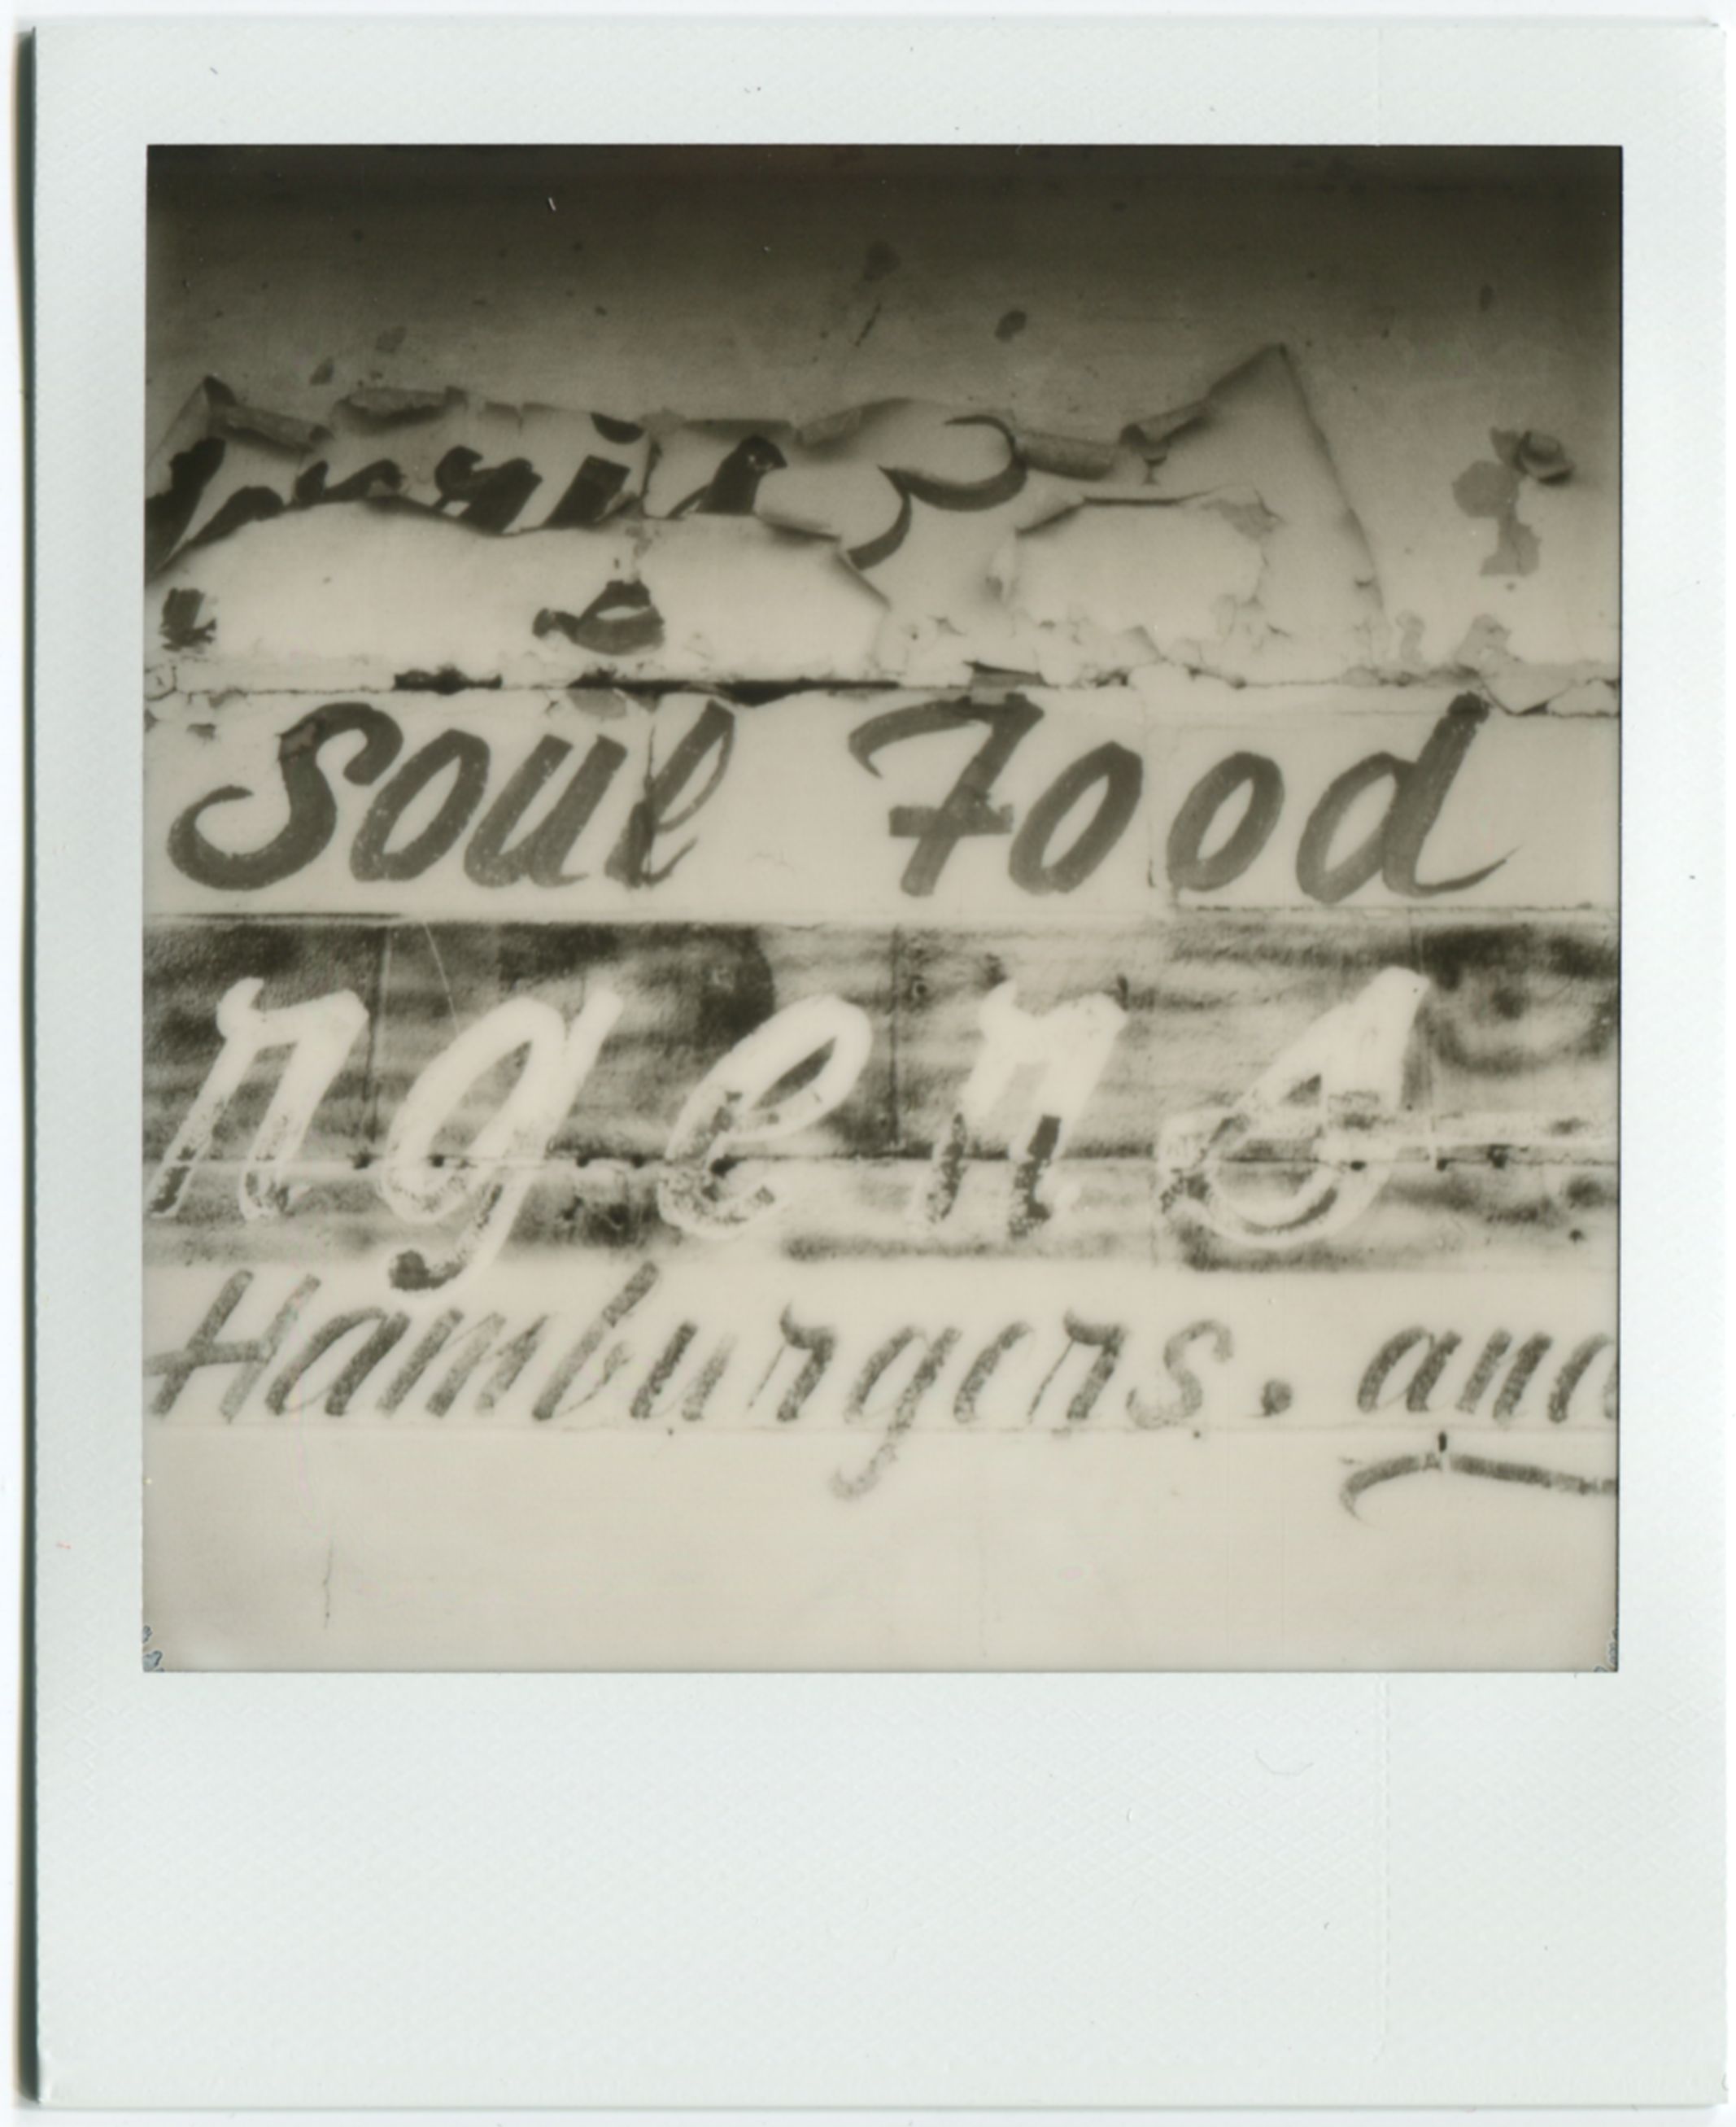 Mill Street Soul Food / SX-70